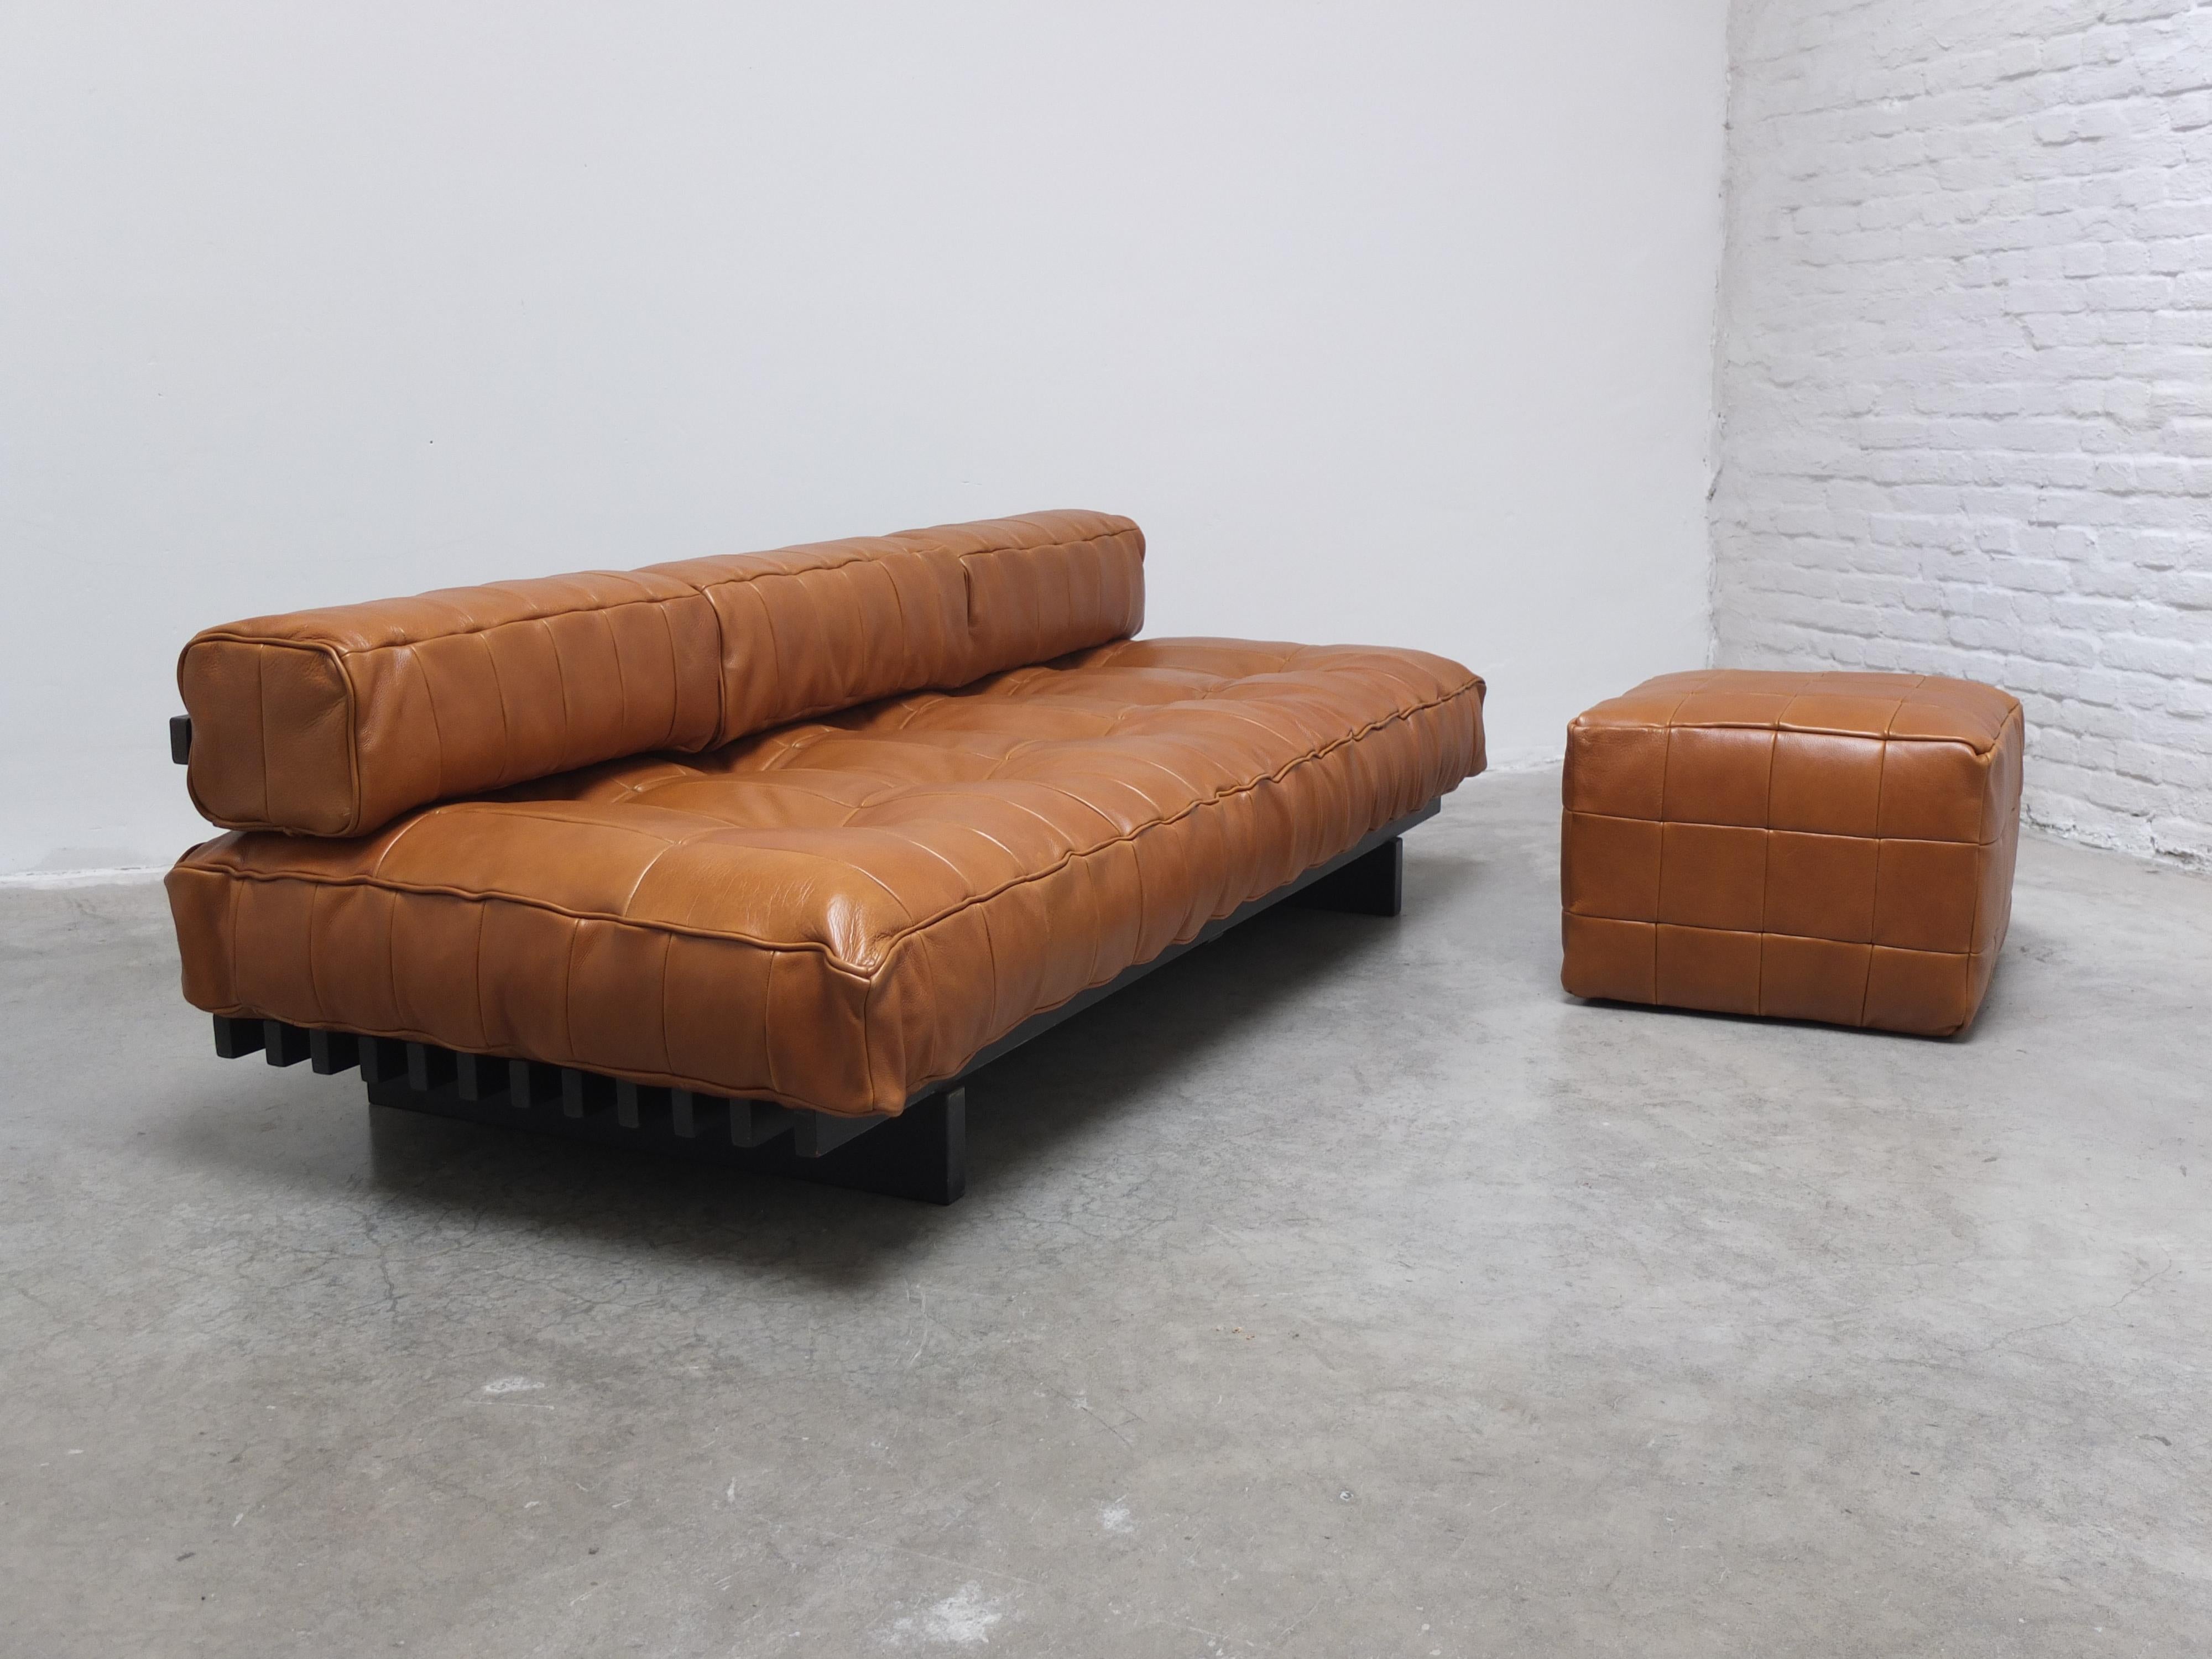 De Sede 'DS80' Patchwork-Leder-Sofa-Tagesbett mit passendem Hocker, 1970er Jahre (20. Jahrhundert)